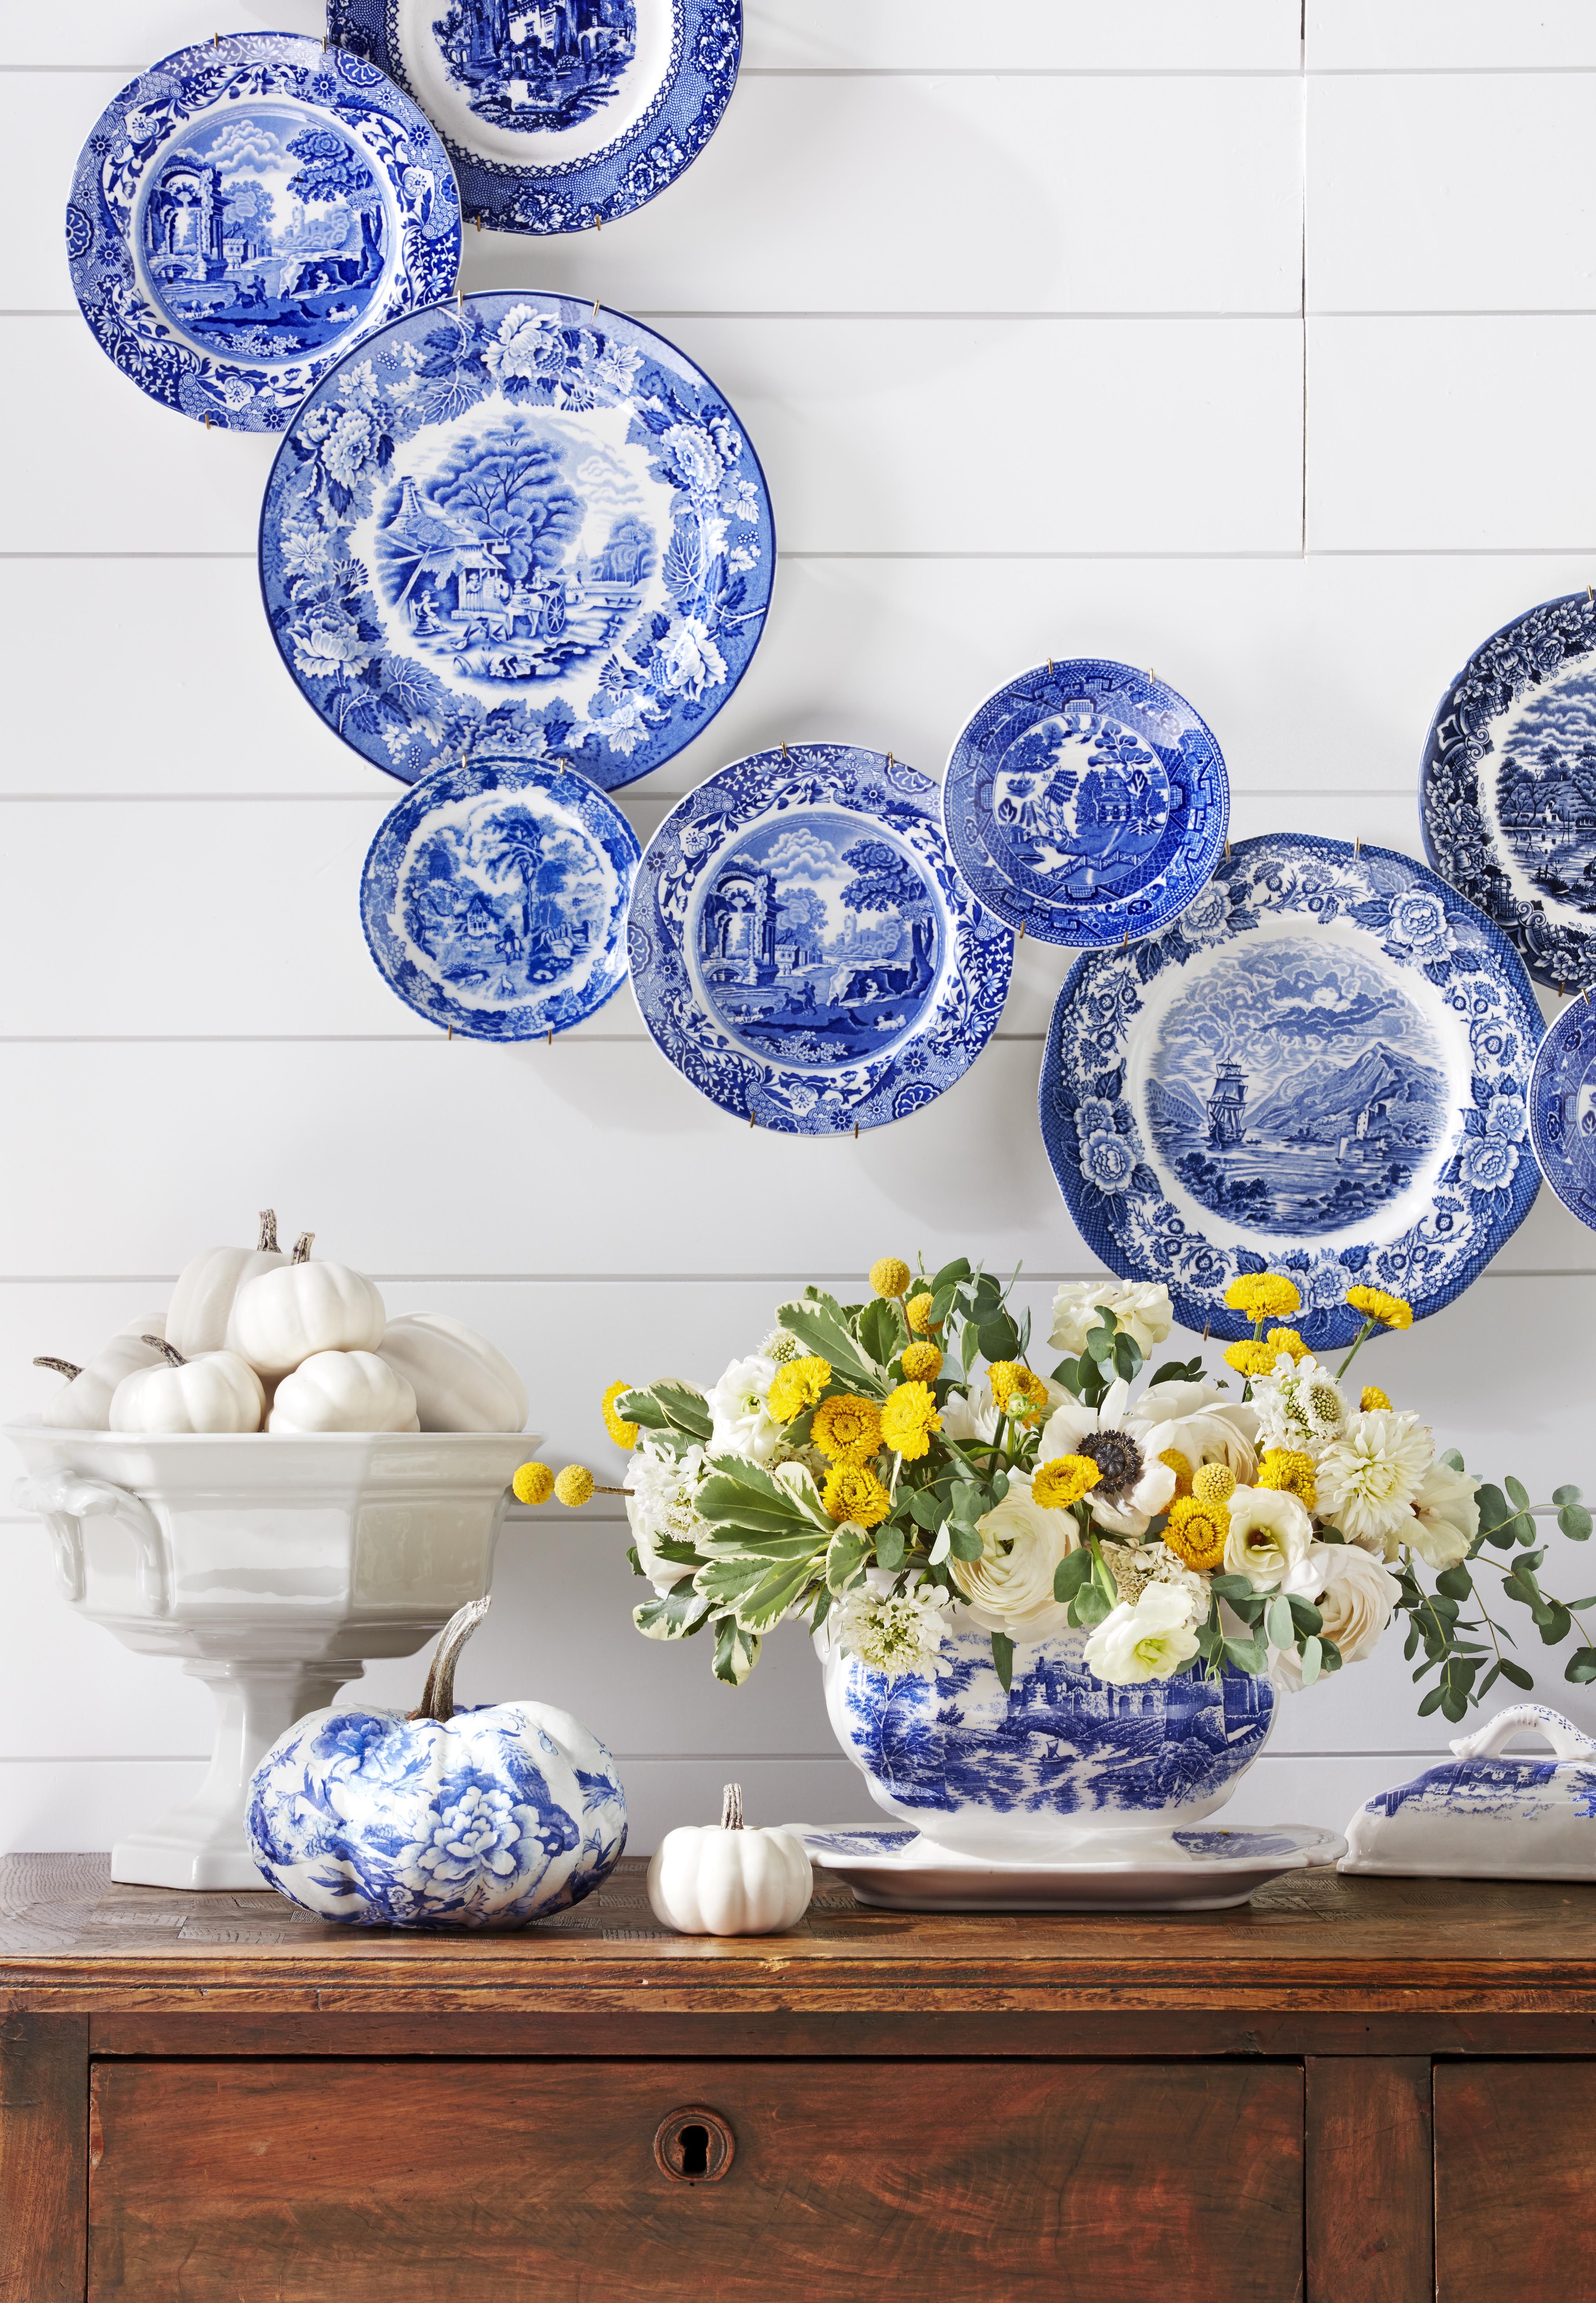 Porcelain Ceramics Decorative Vases Blue And White Floral Prints Tabletop Decors